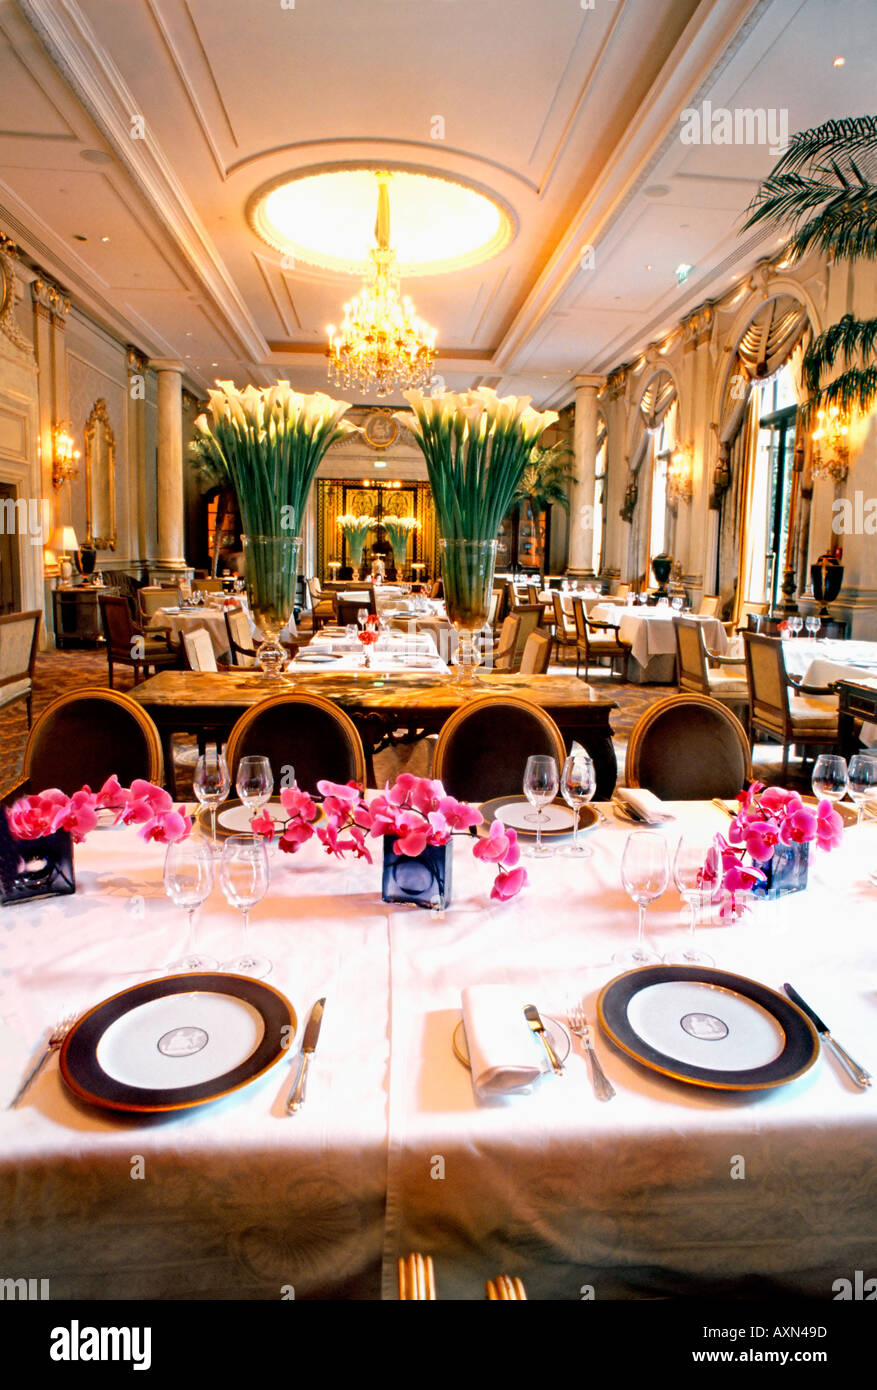 France Paris, Restaurant français « le V » « le cinq » haute cuisine Hôtel « four Seasons George V » tables à manger, intérieur européen, restaurant chic Banque D'Images